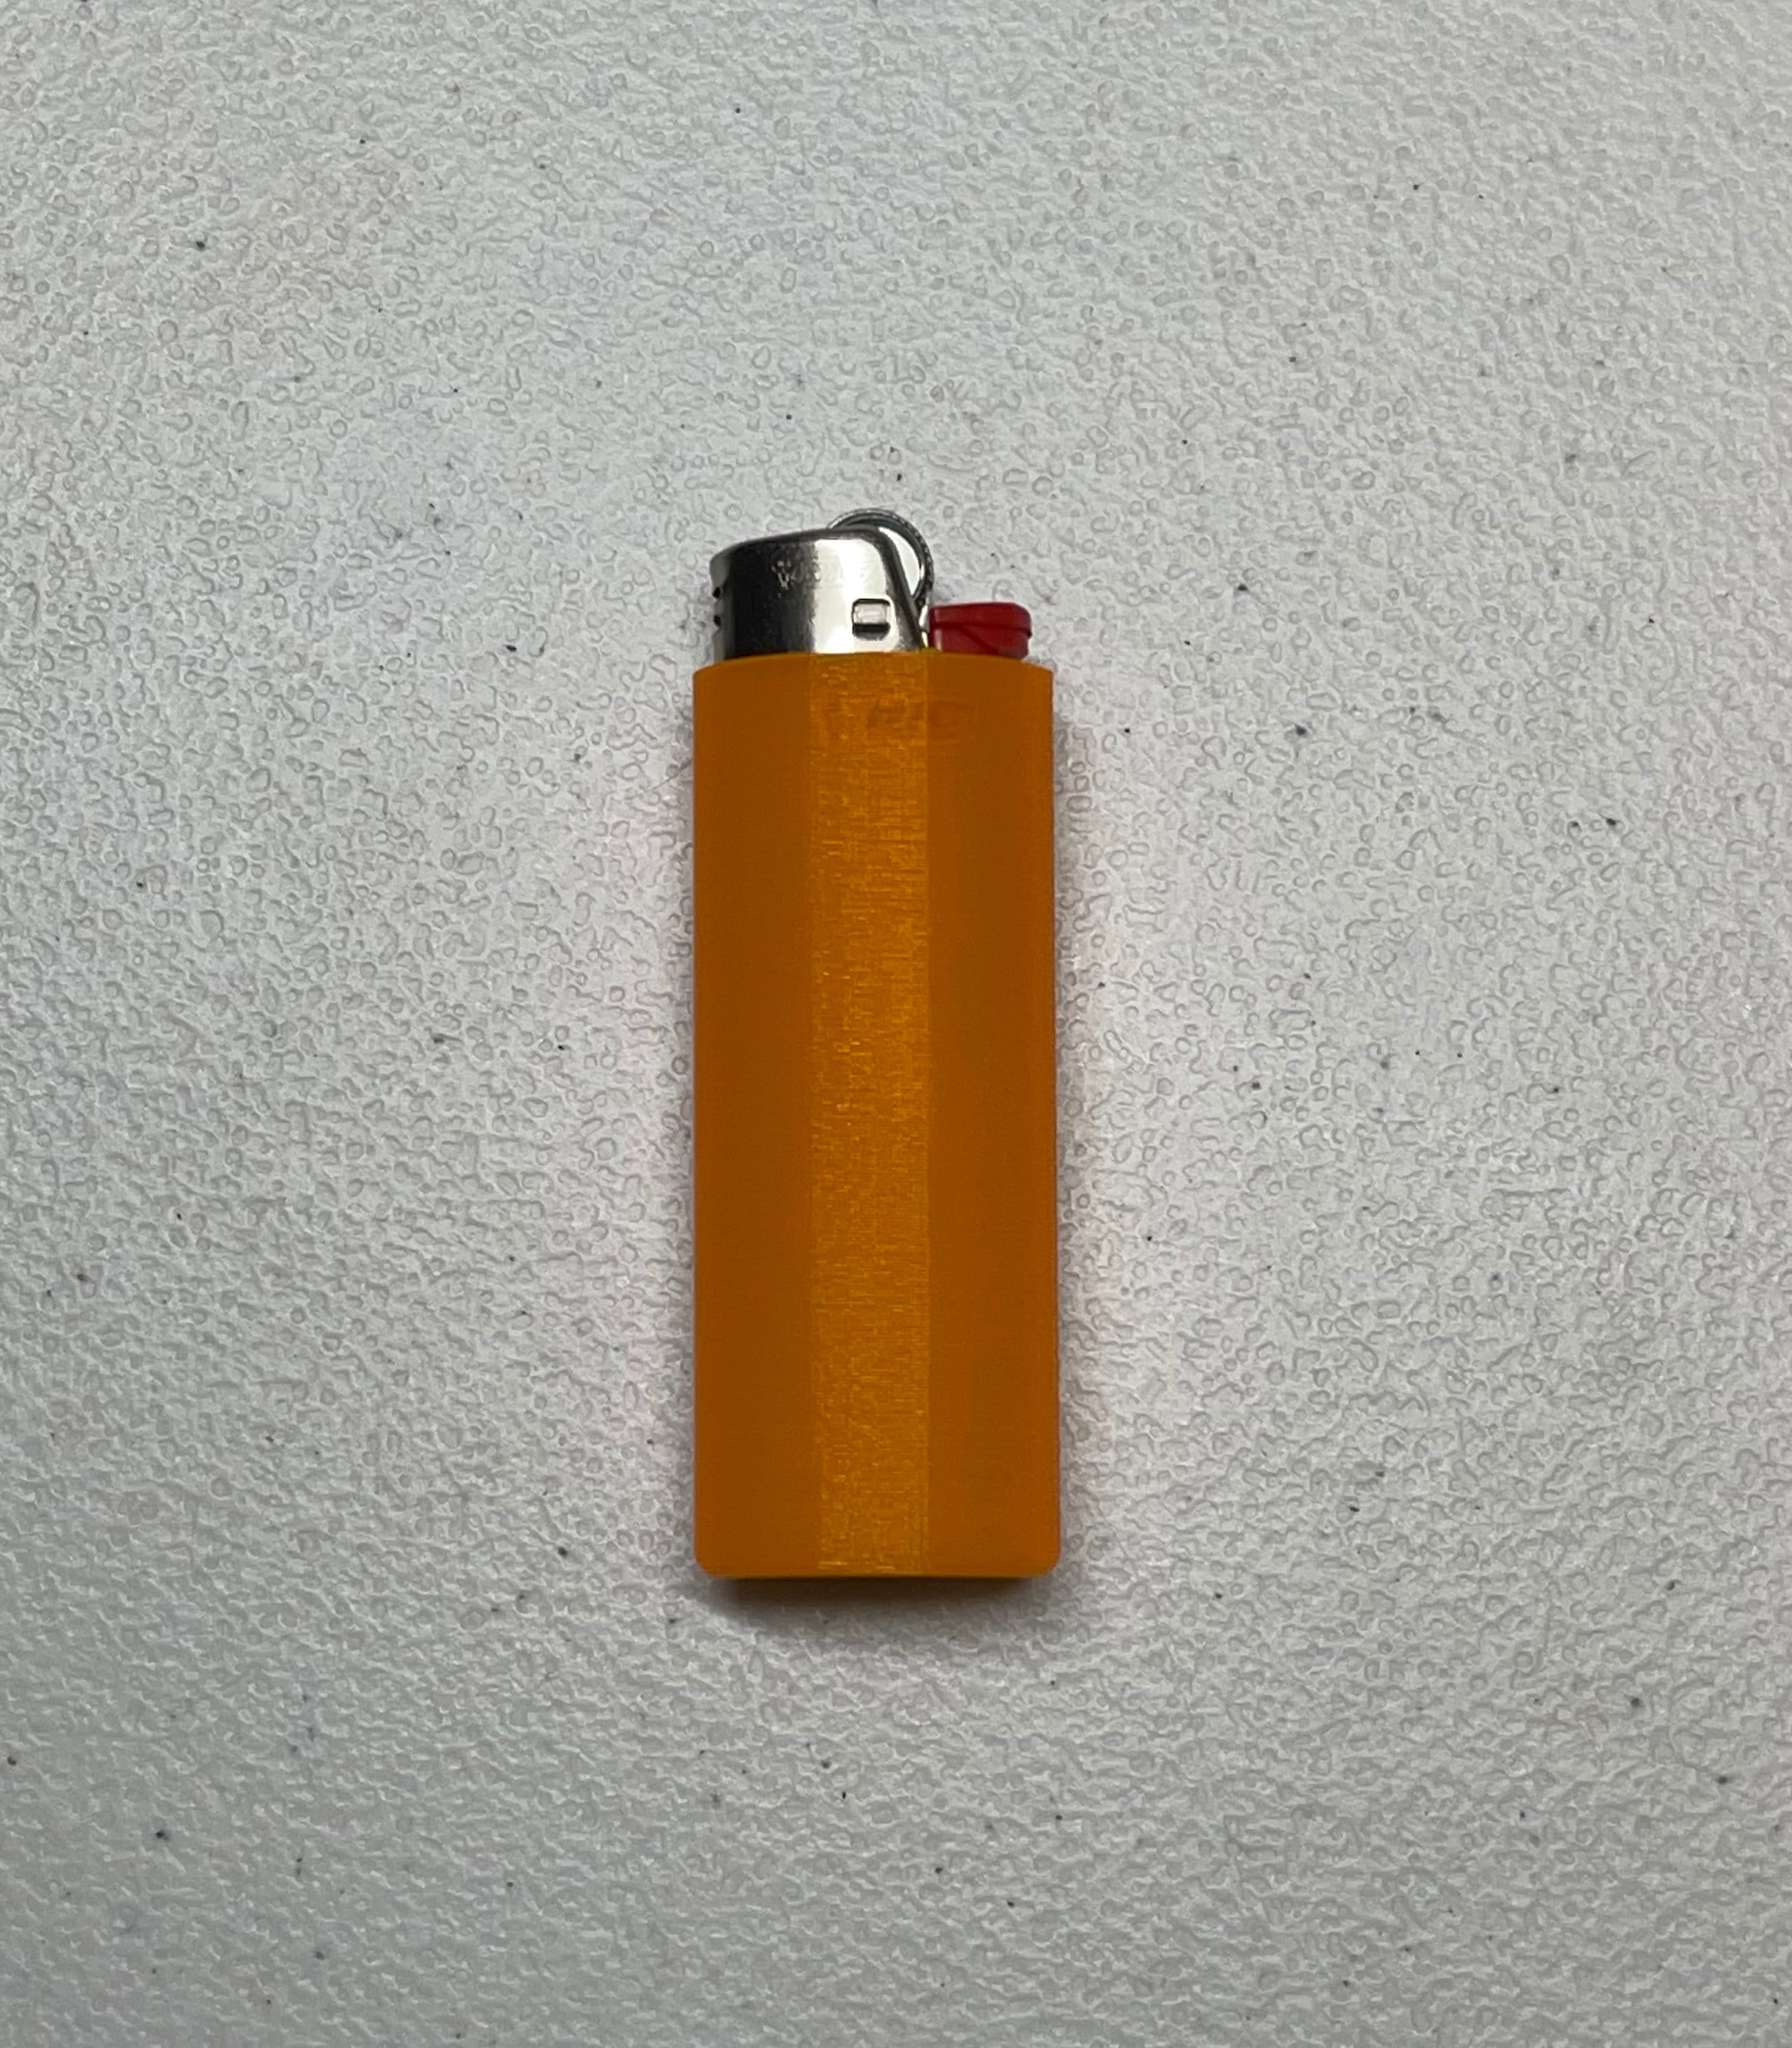 Silver Lighter Case Plain Standard Size Bic Lighter 3 Pack 37373